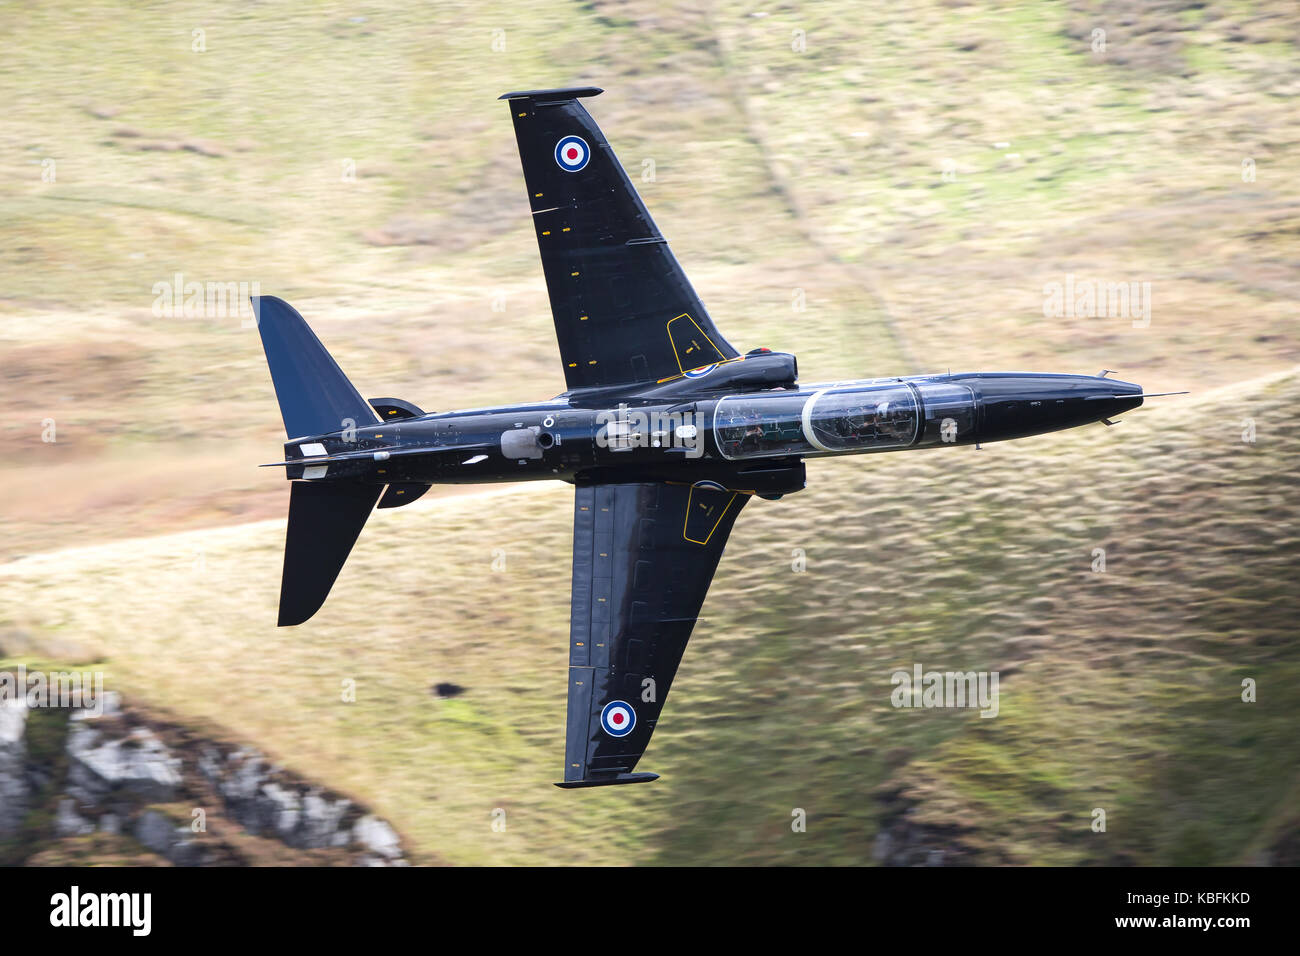 Hawk Ausbildung Flugzeuge erfasst, wie es Banken recht während eines plötzlichen Fly-by in den walisischen Hügel. Mid-Wales, UK. Stockfoto